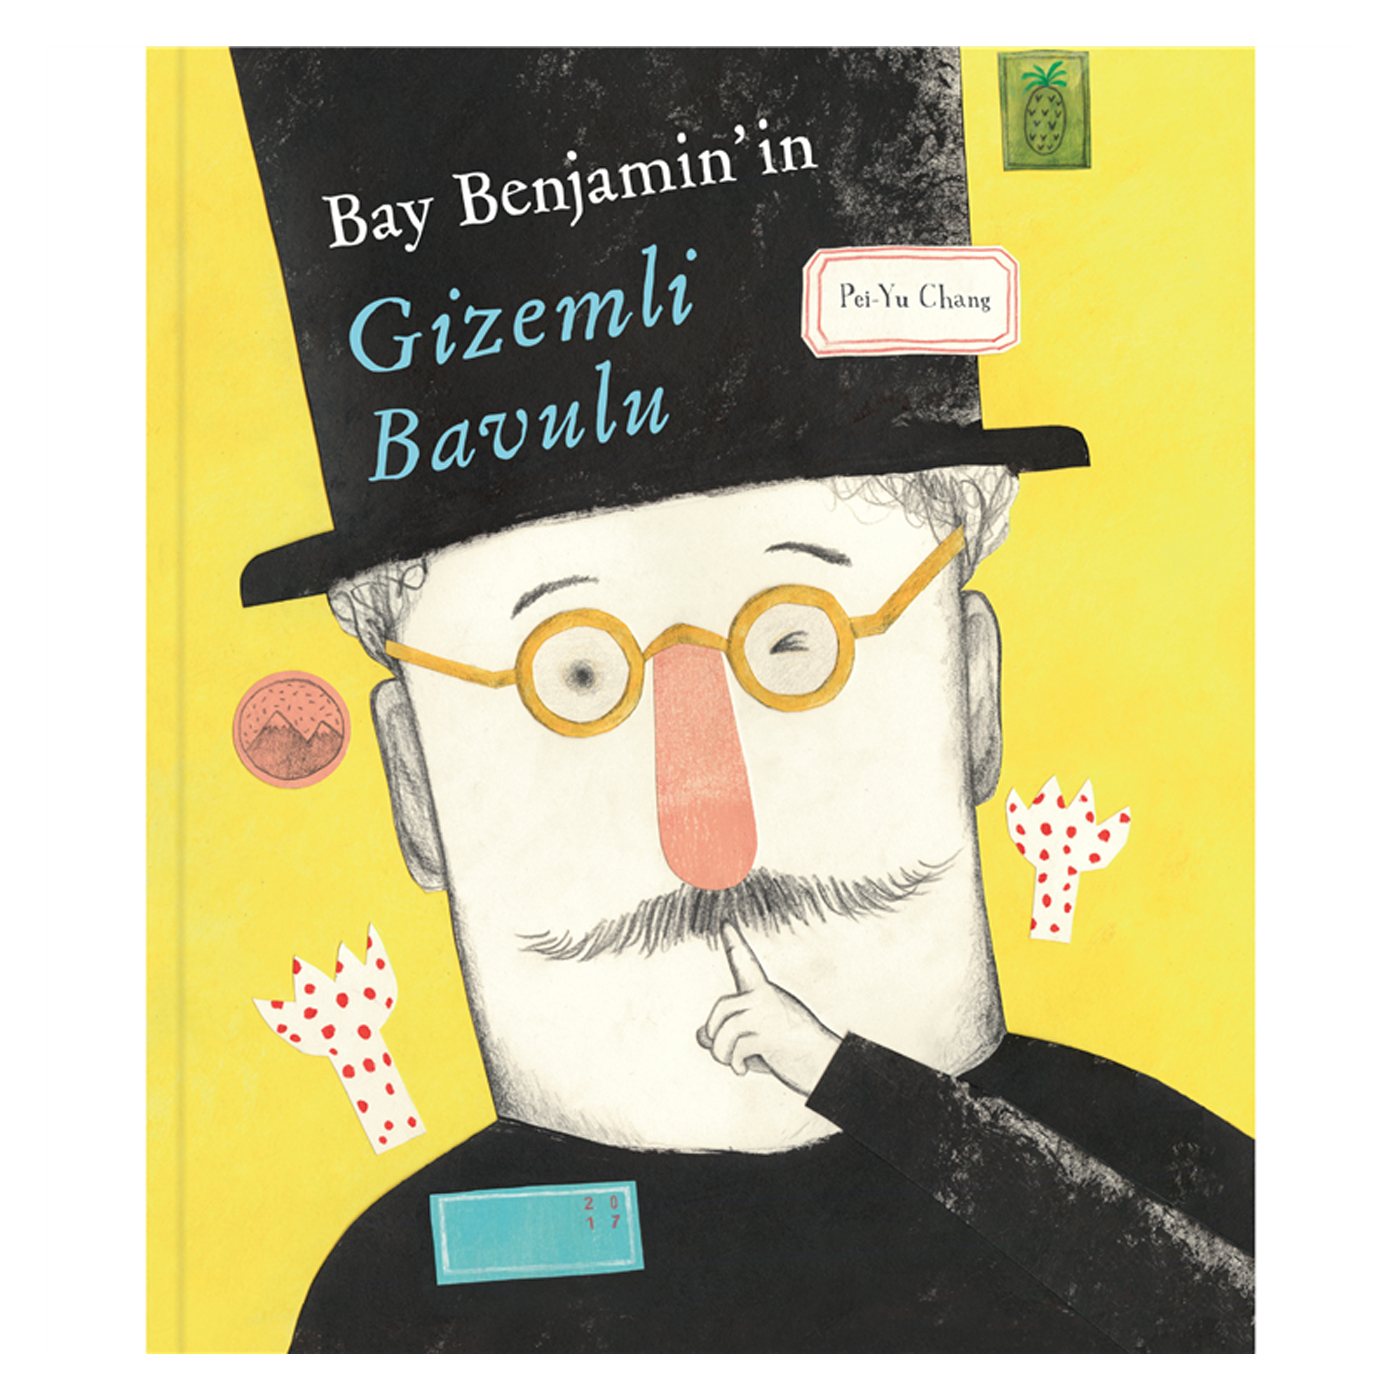  Bay Benjamin’in Gizemli Bavulu